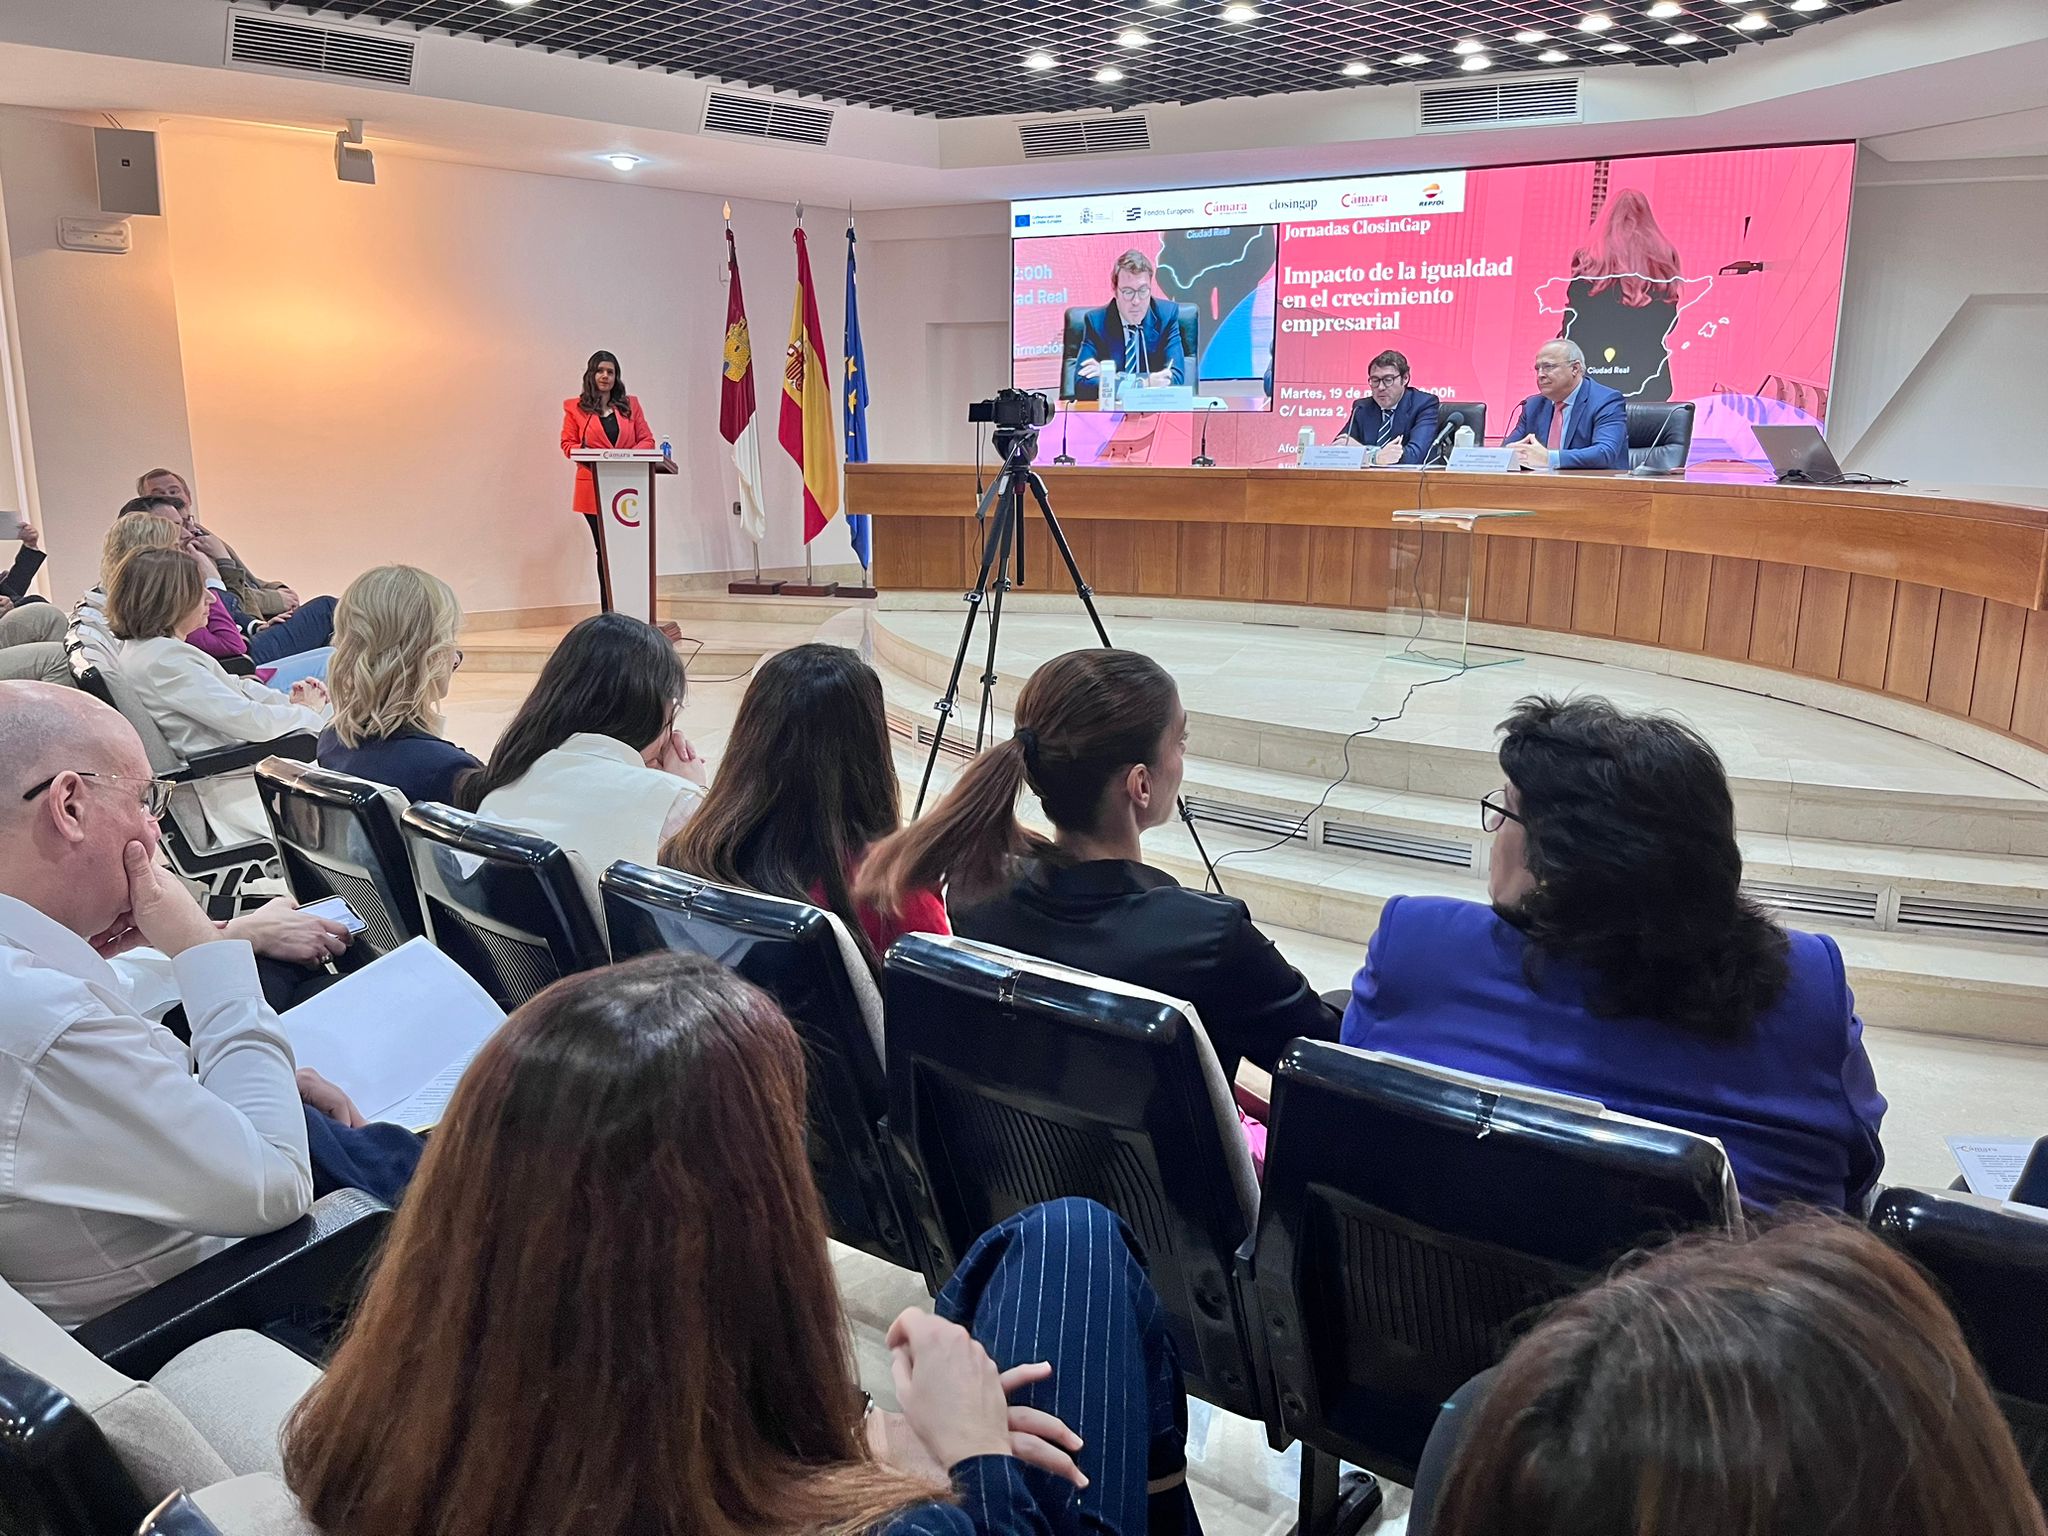 ClosinGap y la Cámara de Comercio de Ciudad Real se unen para impulsar buenas prácticas en igualdad de género entre las empresas de la región 